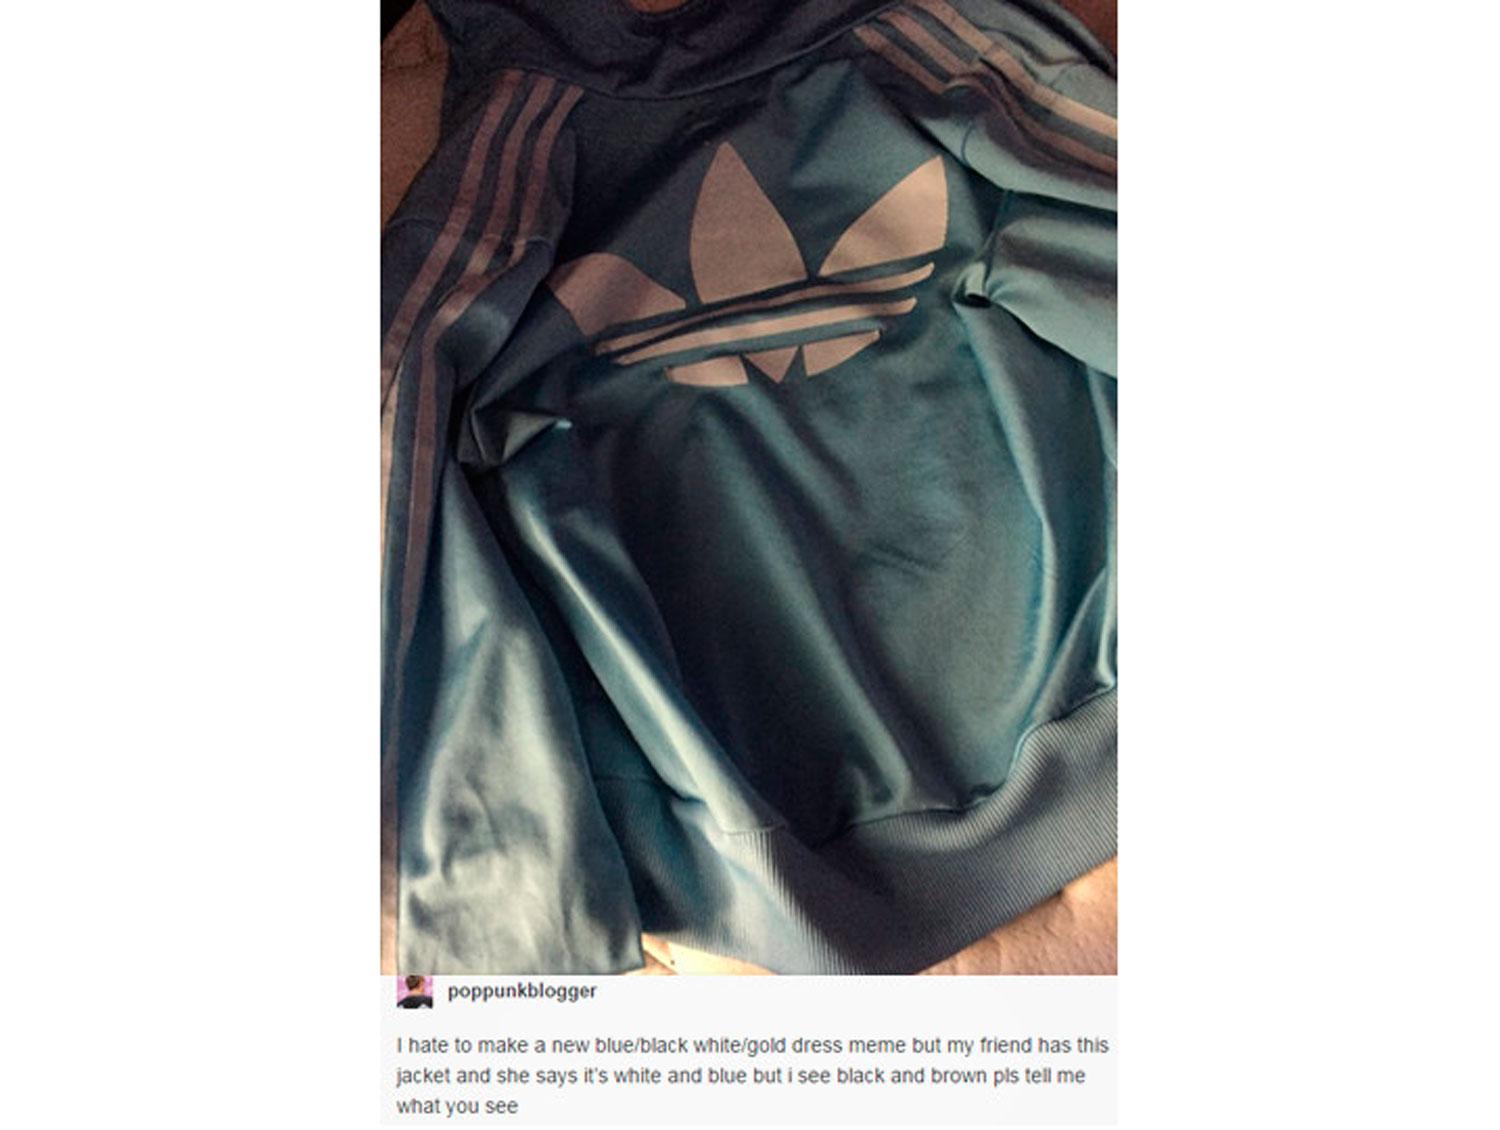 Vilken färg har jackan egentligen? Det är det nya dilemmat på internet.